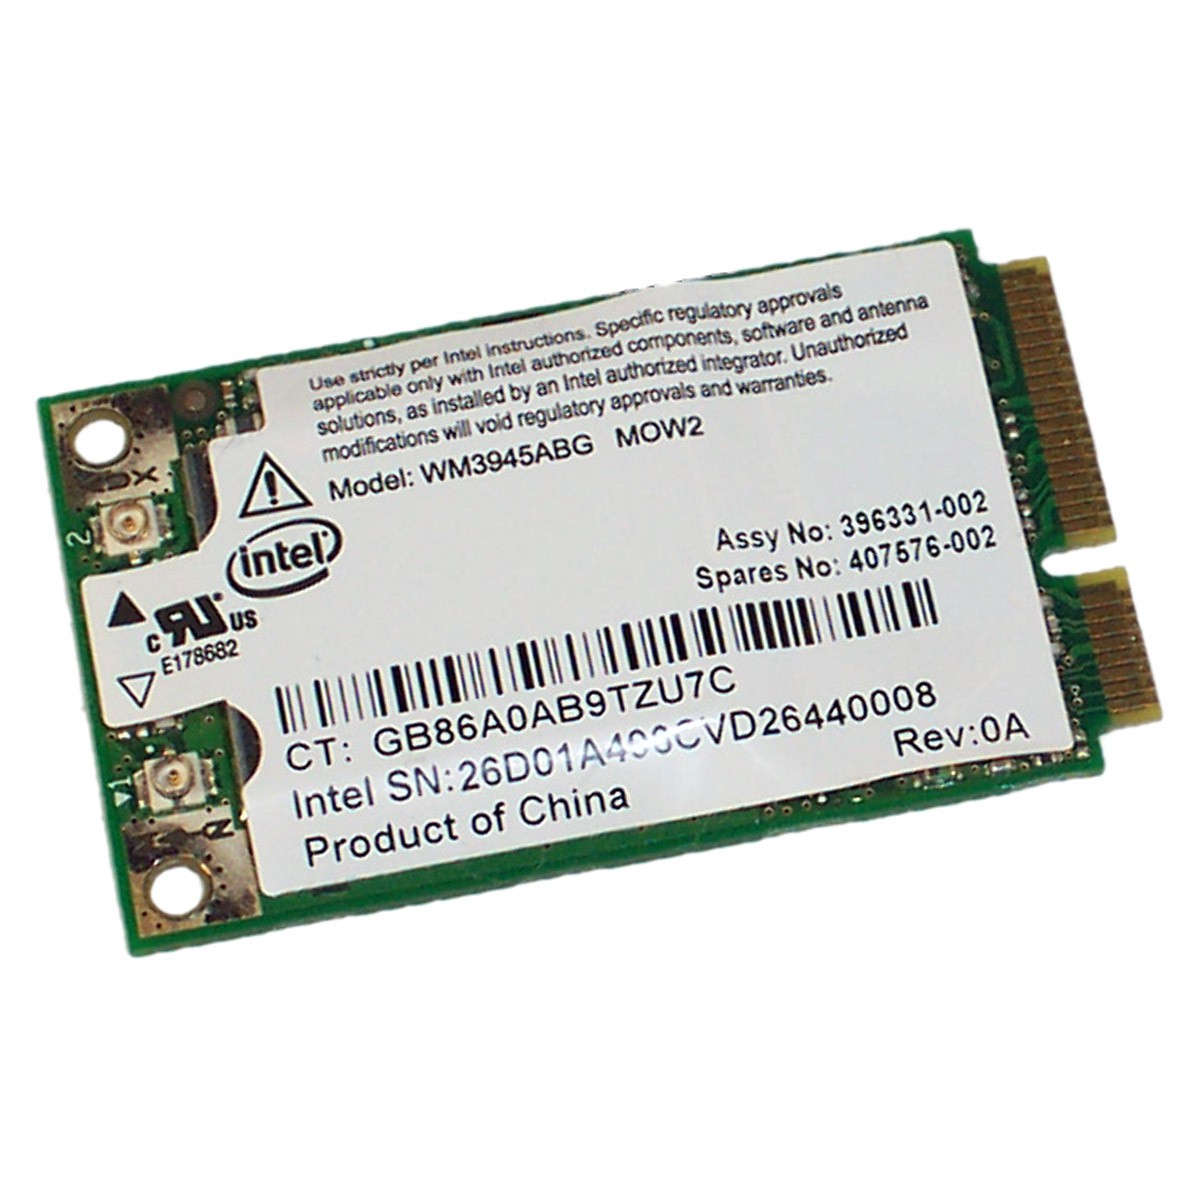 Carte Wifi PCI-e Dell BCM943228HM4L 01JKGC 010YN9 DW1530 Broadcom  802.11bgna - MonsieurCyberMan